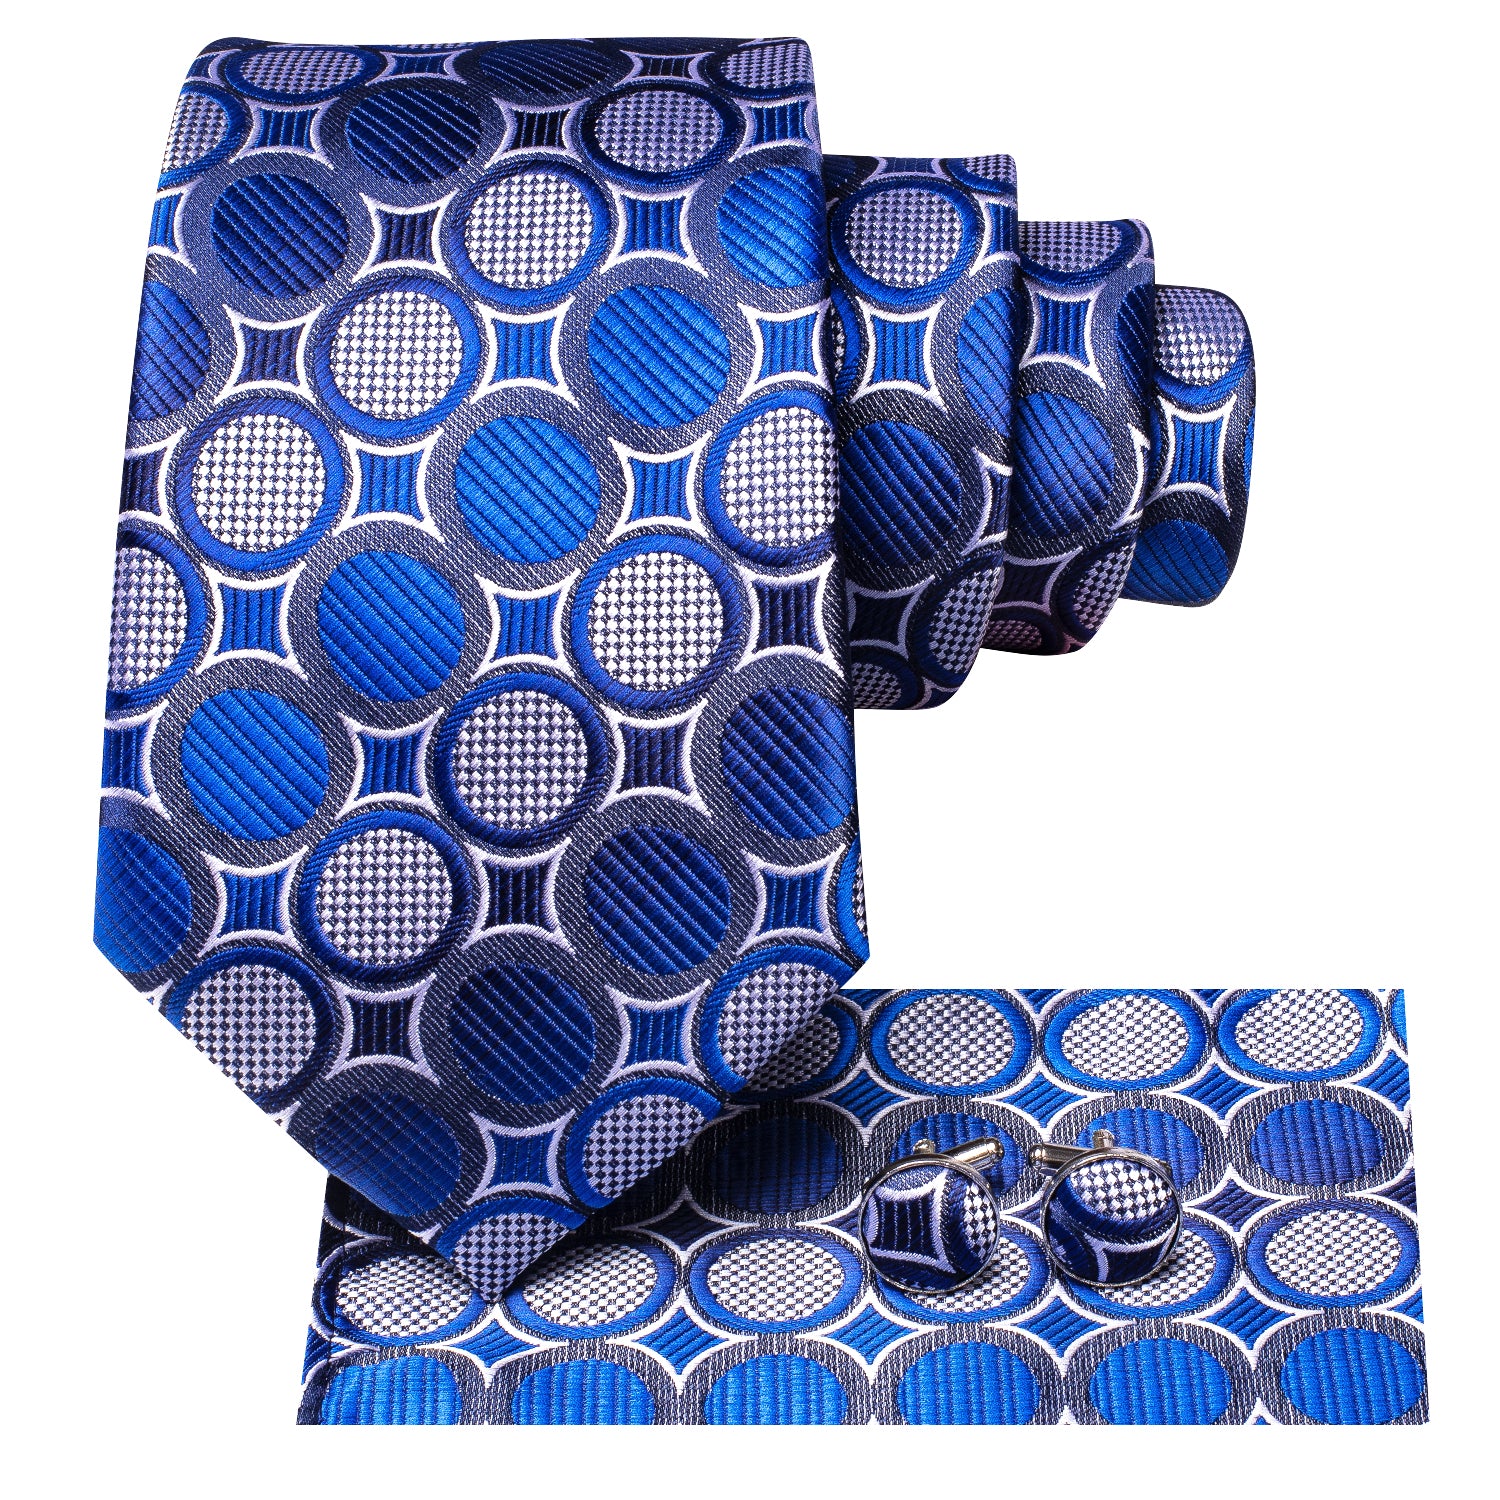 Blue white polks dots tie for men